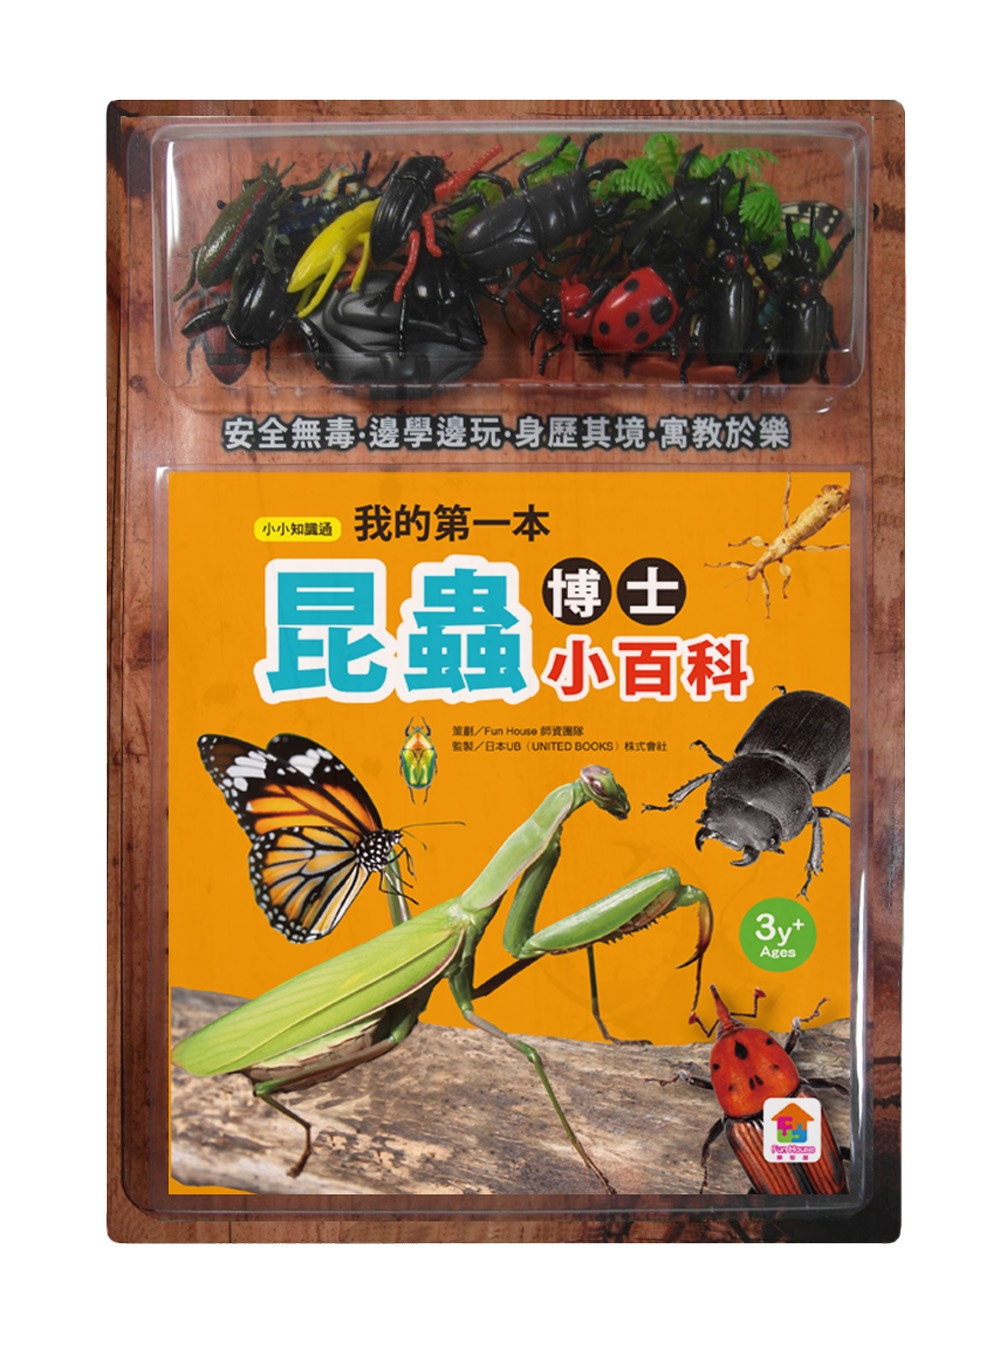 我的第一本昆蟲博士小百科(1本小百科+12款昆蟲學習模型及3個配件+昆蟲大作戰冒險遊戲組)